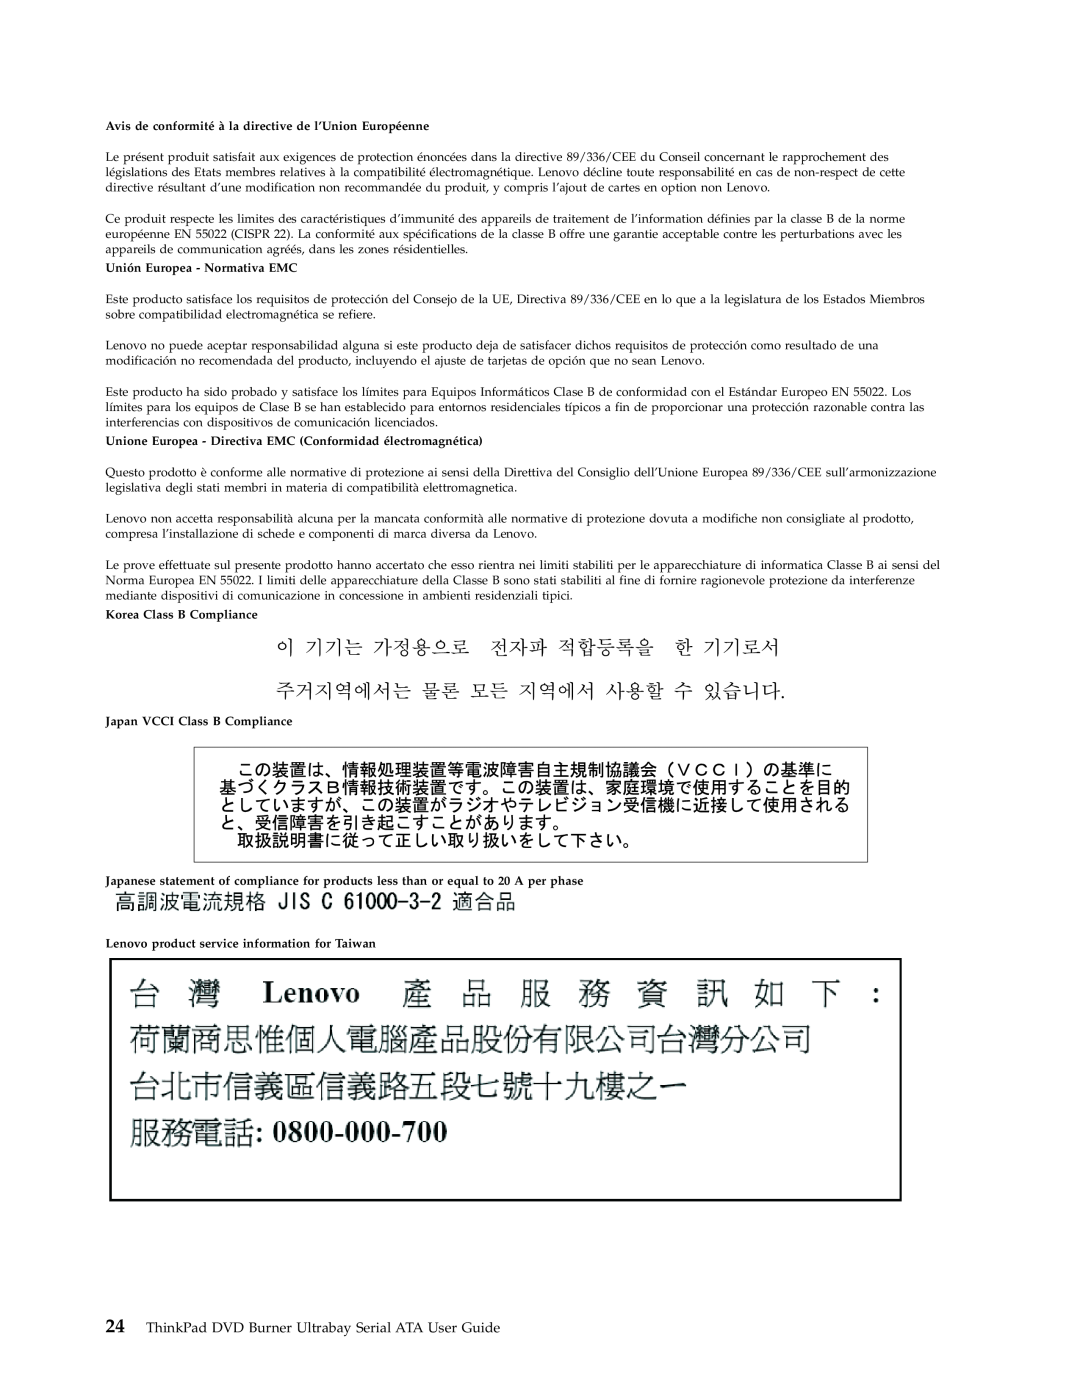 Lenovo 43N3222 manual Unión Europea - Normativa EMC, Korea Class B Compliance, Japan VCCI Class B Compliance 